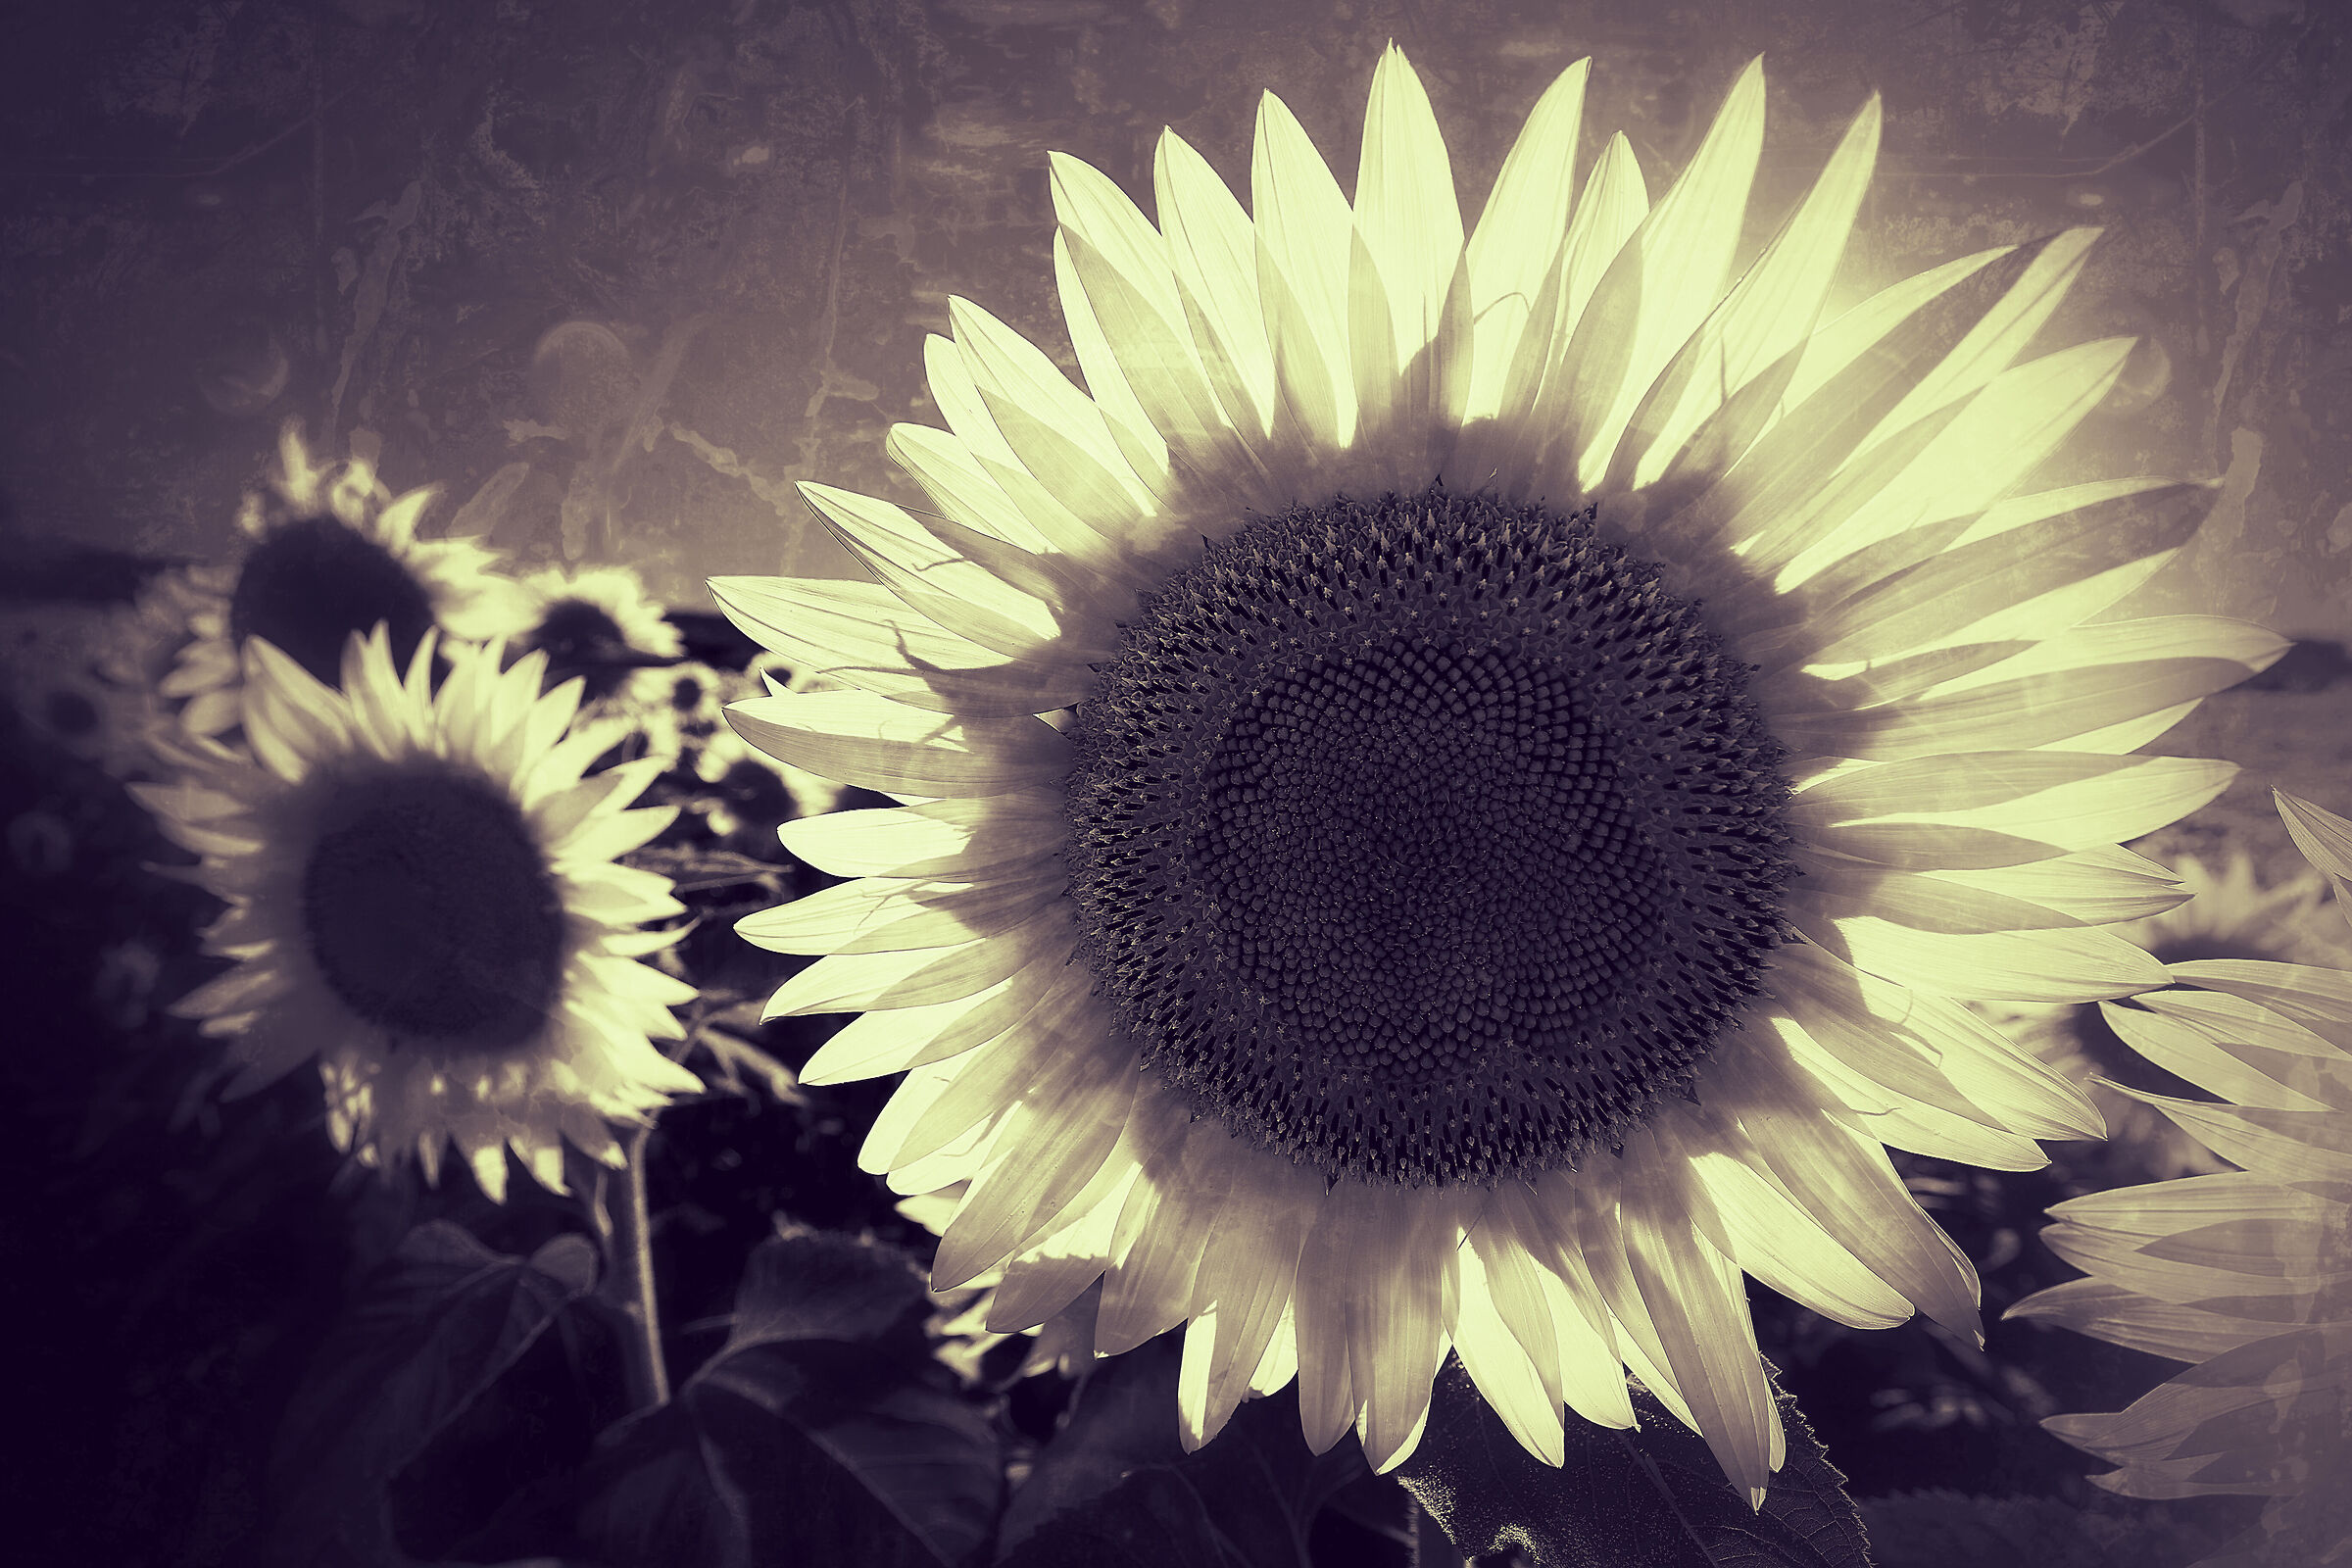 White sunflowers...